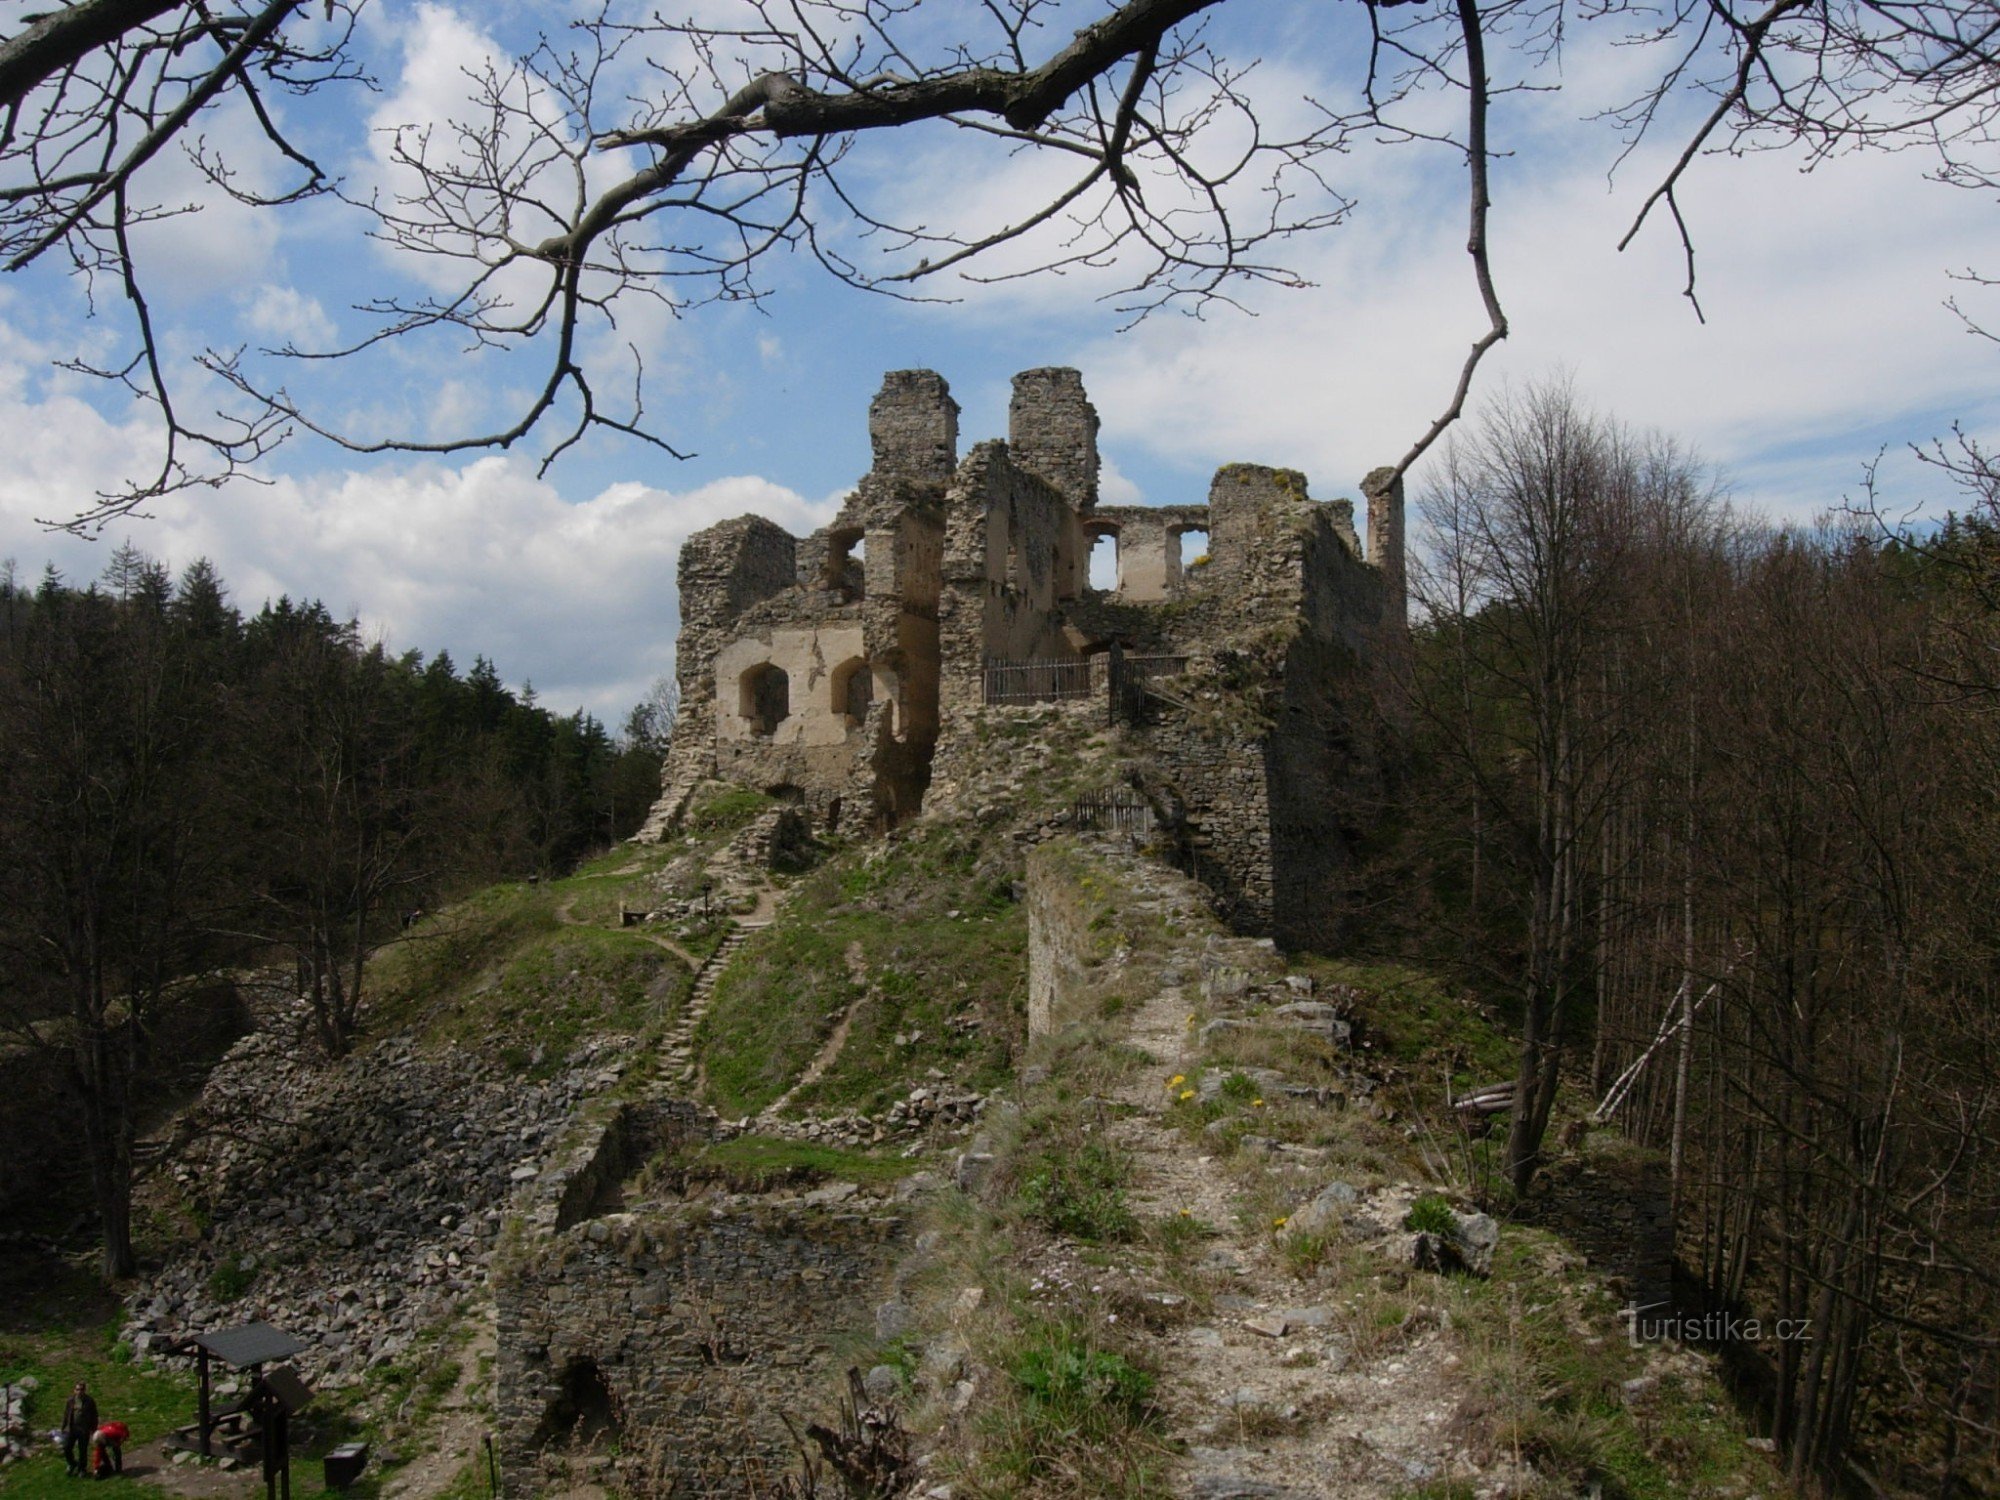 Castelo de pedra da donzela/Maidštejn/